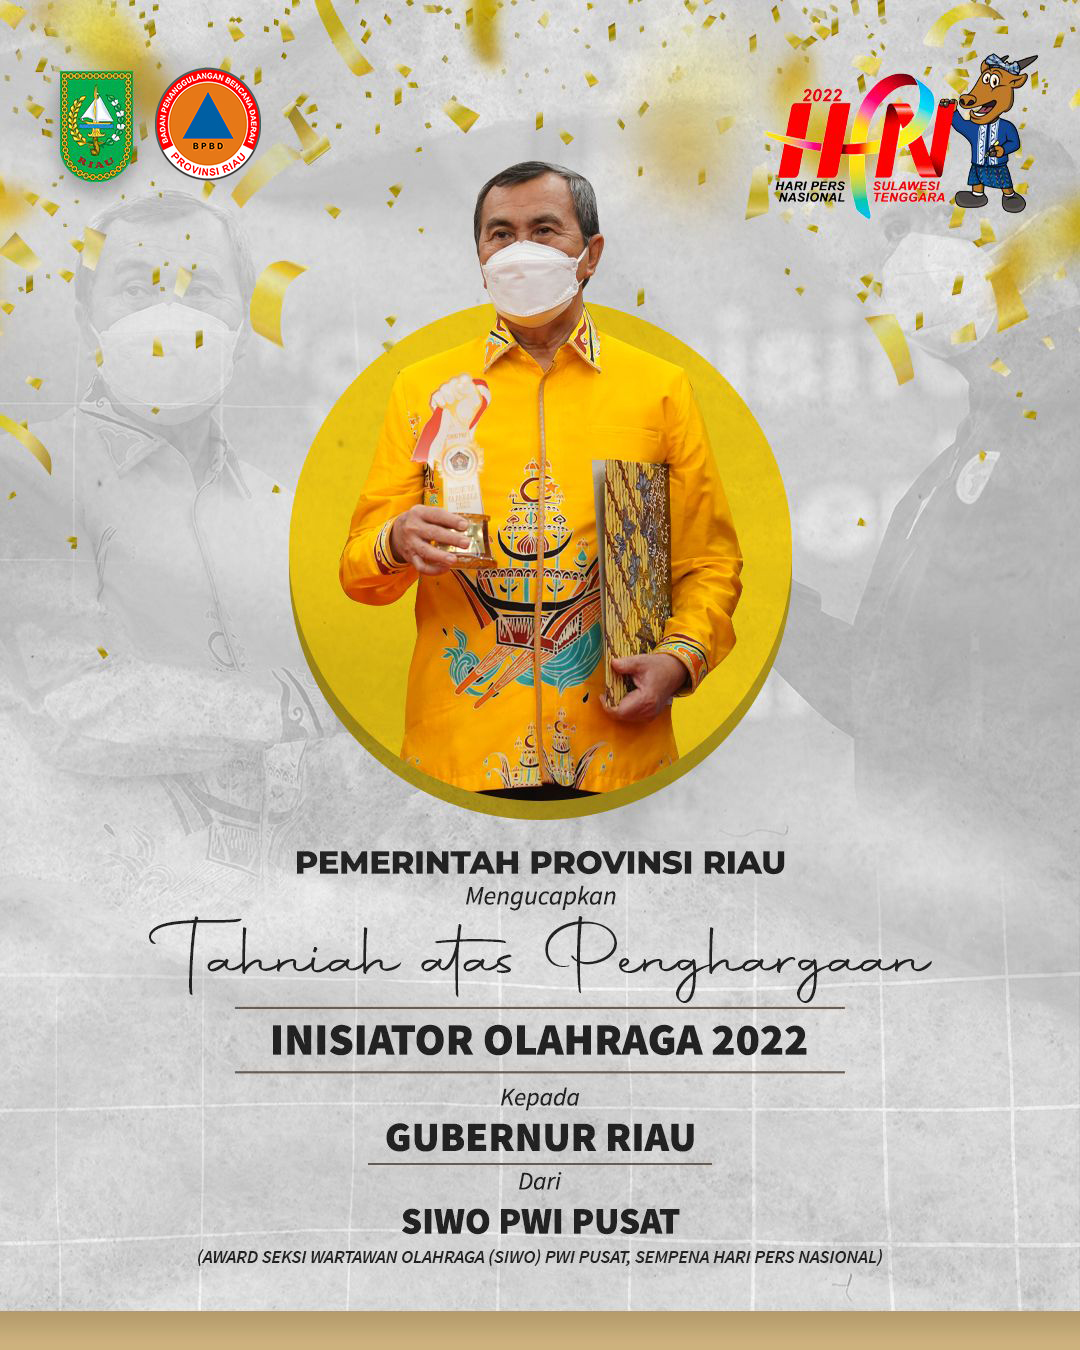 Badan Penanggulangan Bencana Daerah Provinsi Riau mengucapkan Tahniah Atas Penghargaan dari Pengurus